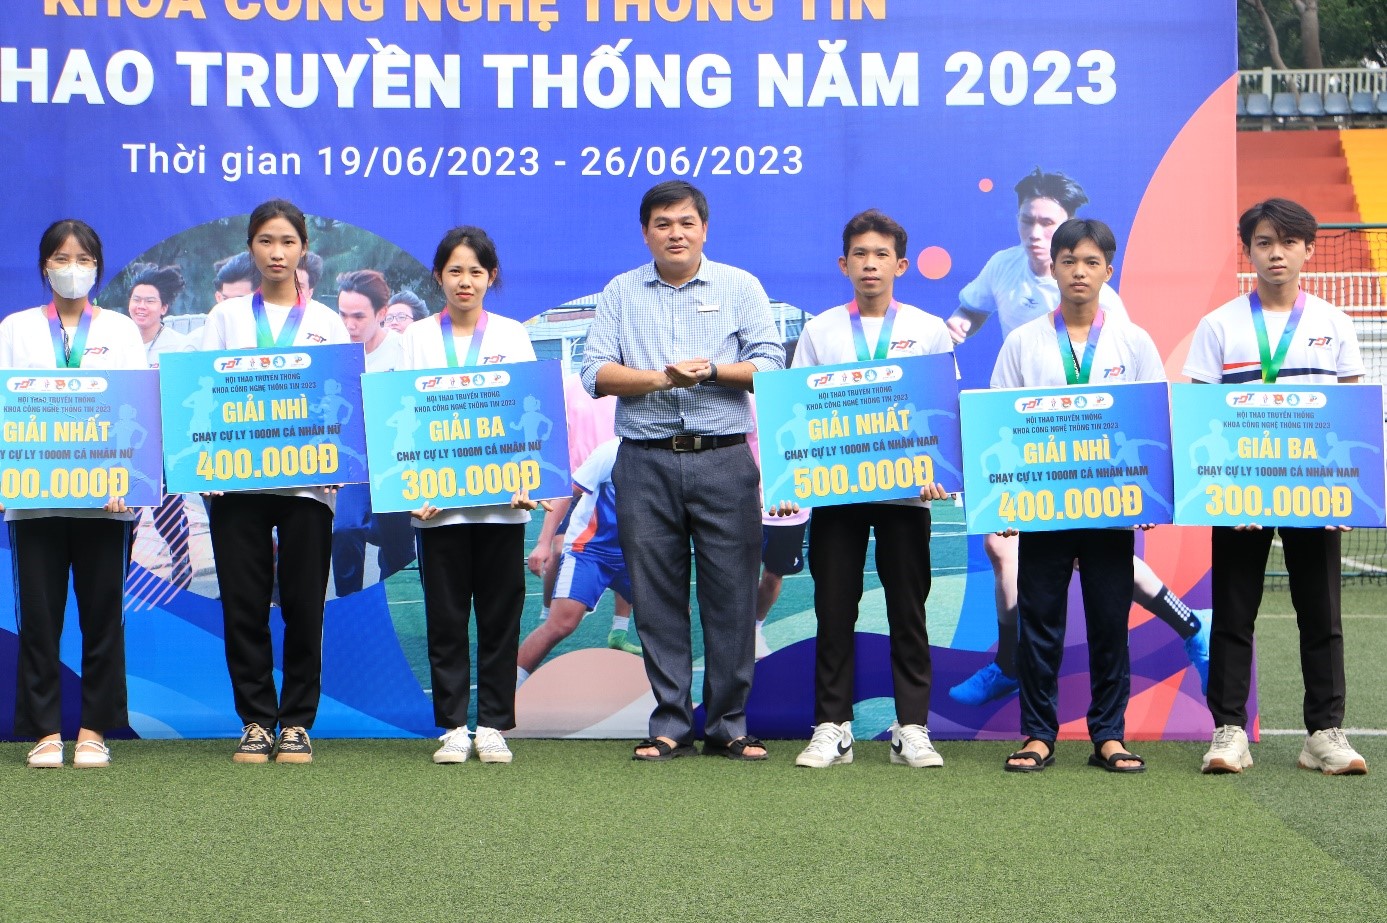 Thầy Trần Trung Tín trao giải cho các cá nhân xuất sắc bộ môn chạy cự ly 1000m